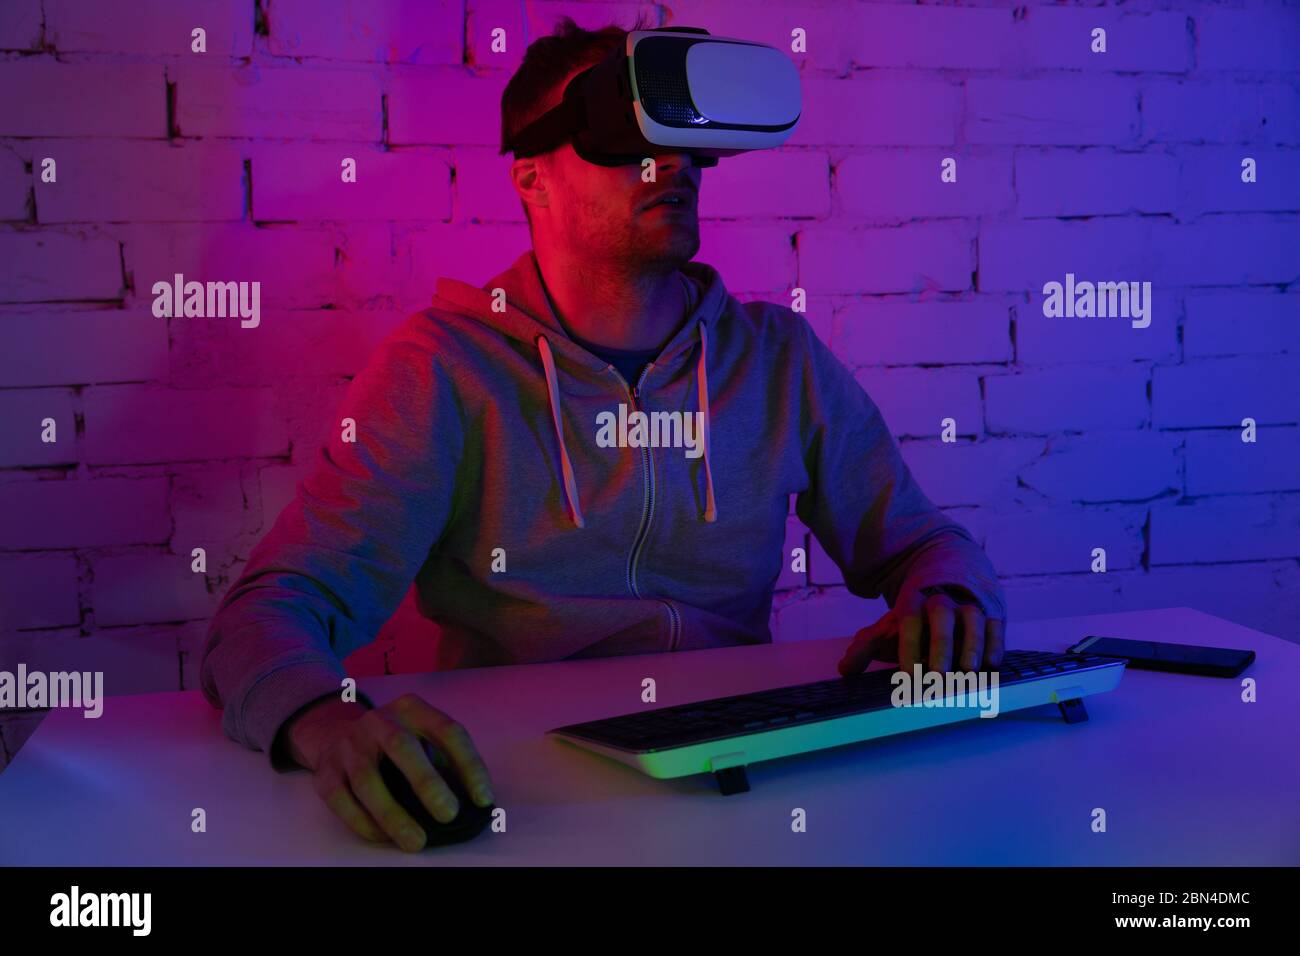 VR-Gaming - Mann spielt Videospiele mit Virtual Reality-Headset im Raum mit Neonbeleuchtung Stockfoto